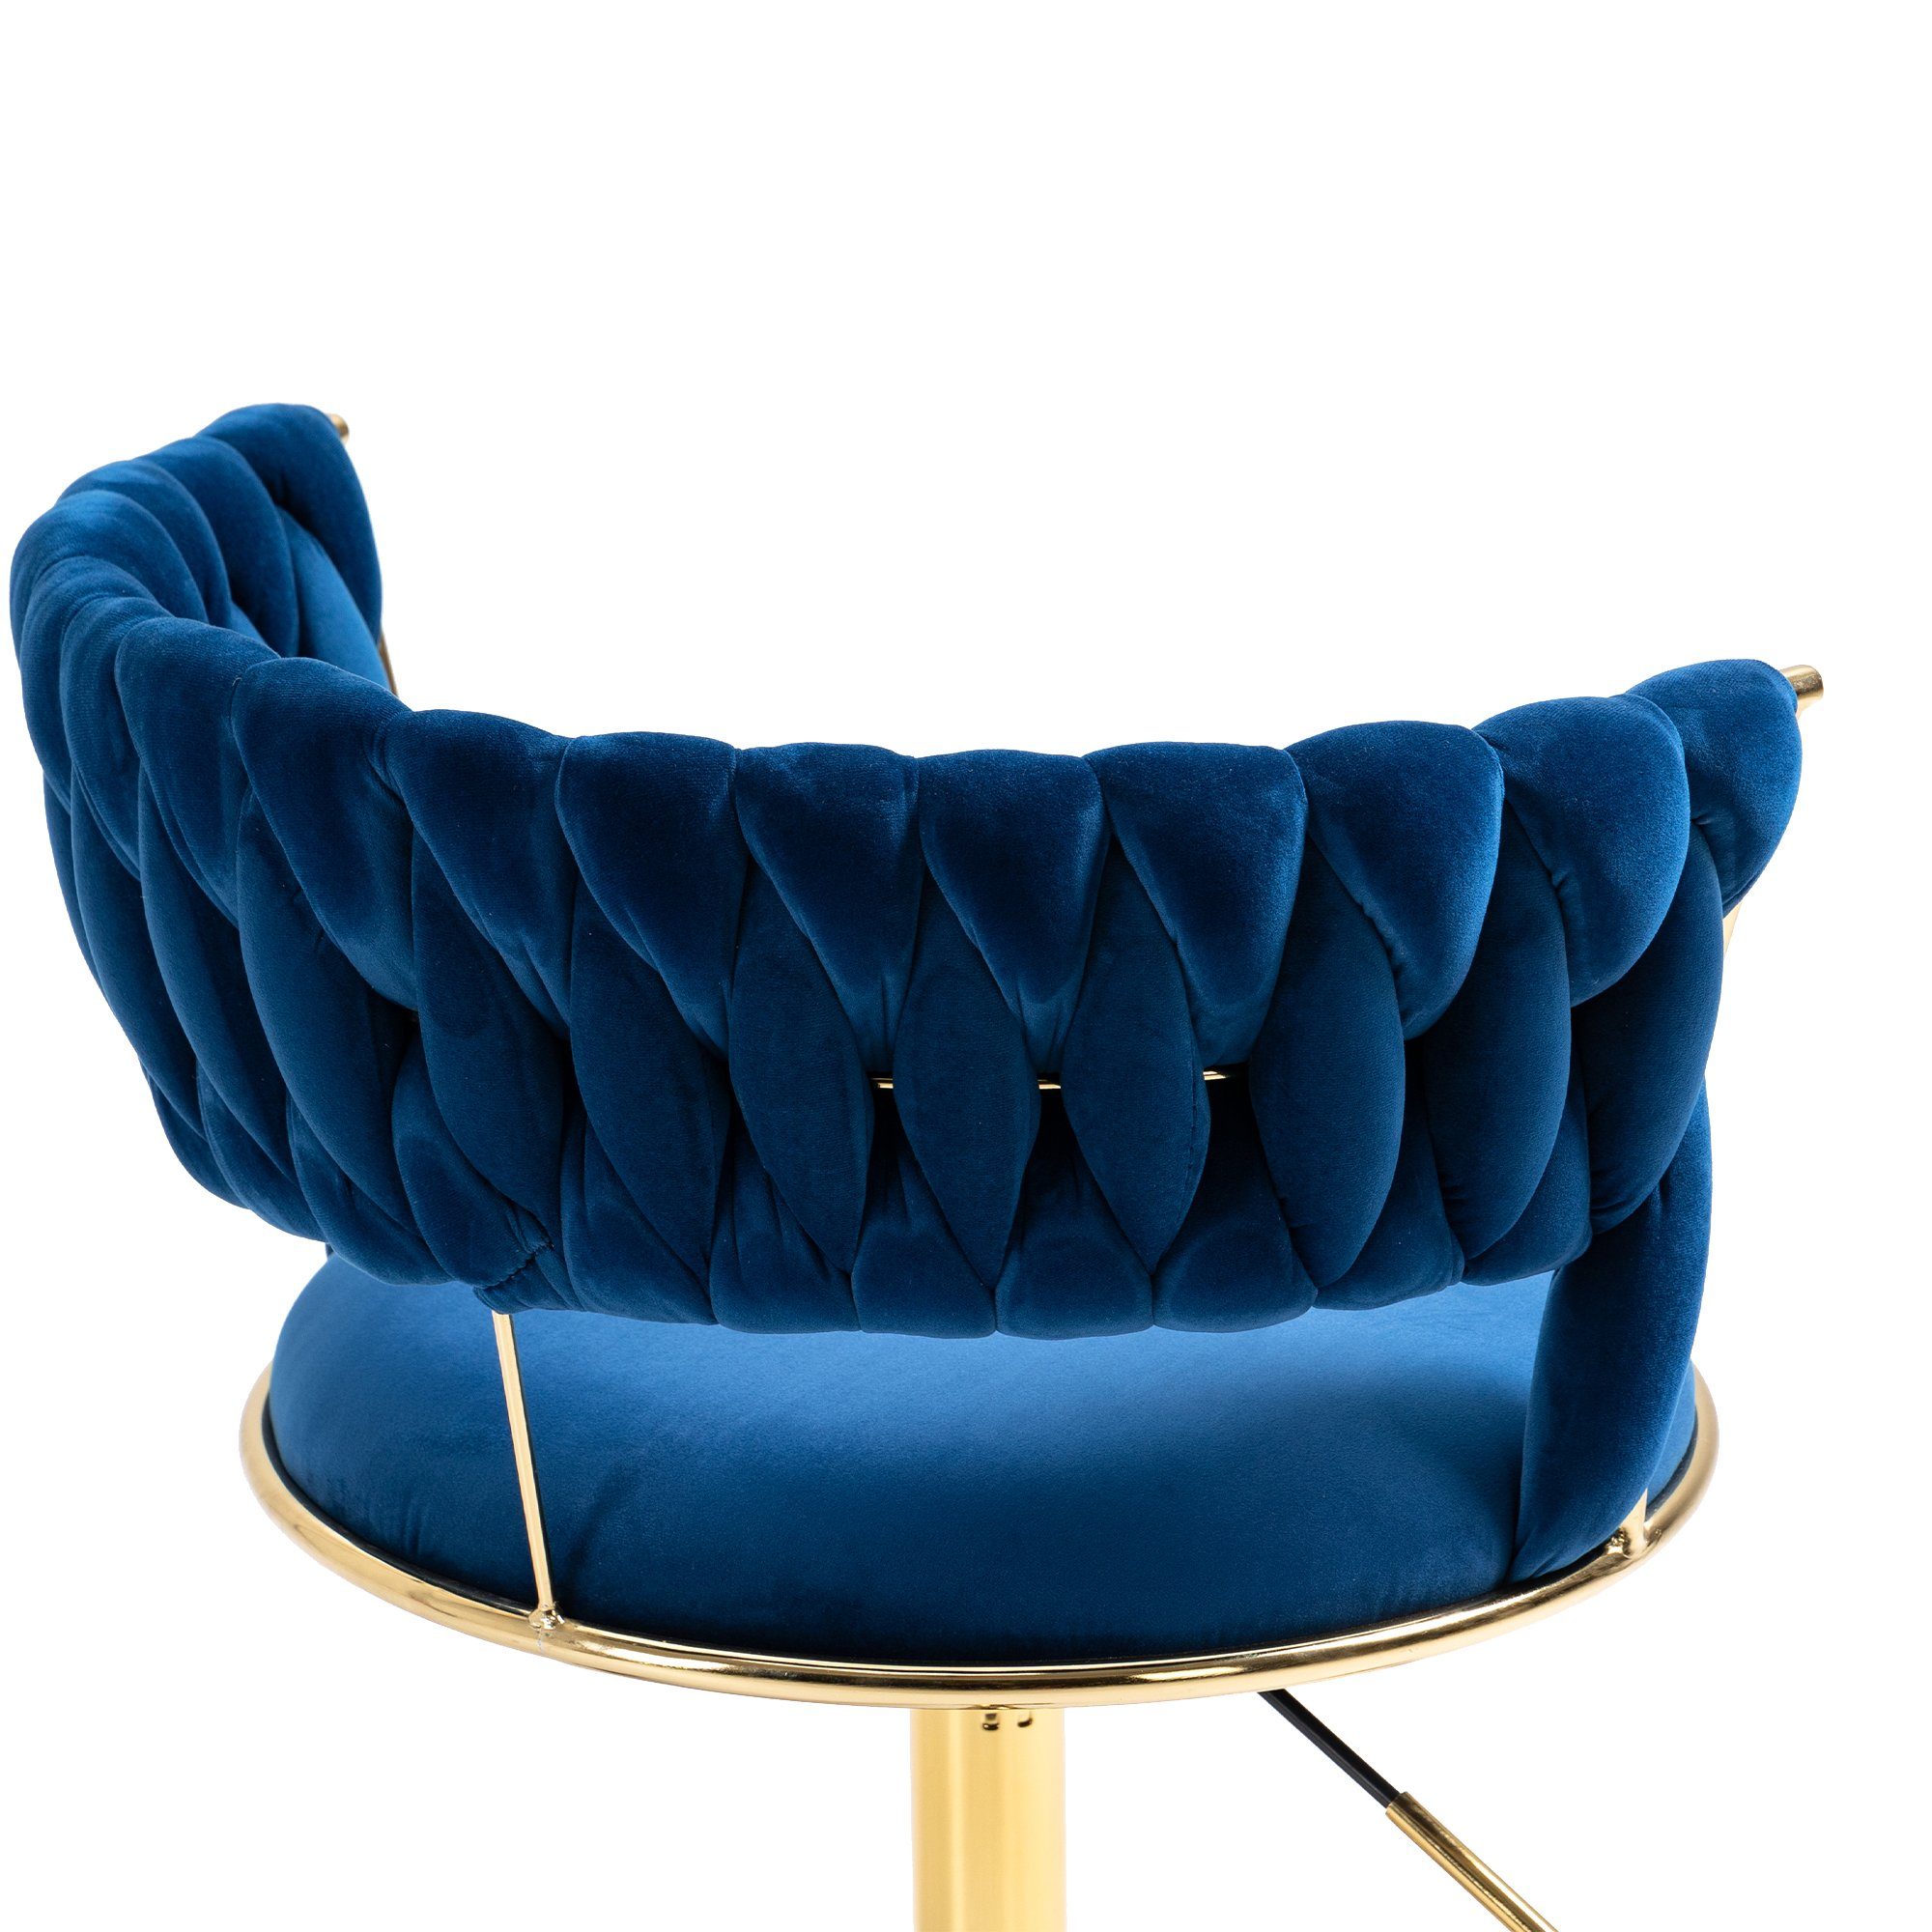 goldene Odikalo drehbar Drehstuhl Blau mehrfarbig Freizeit Bürostuhl Make-up Samt Beine 360°